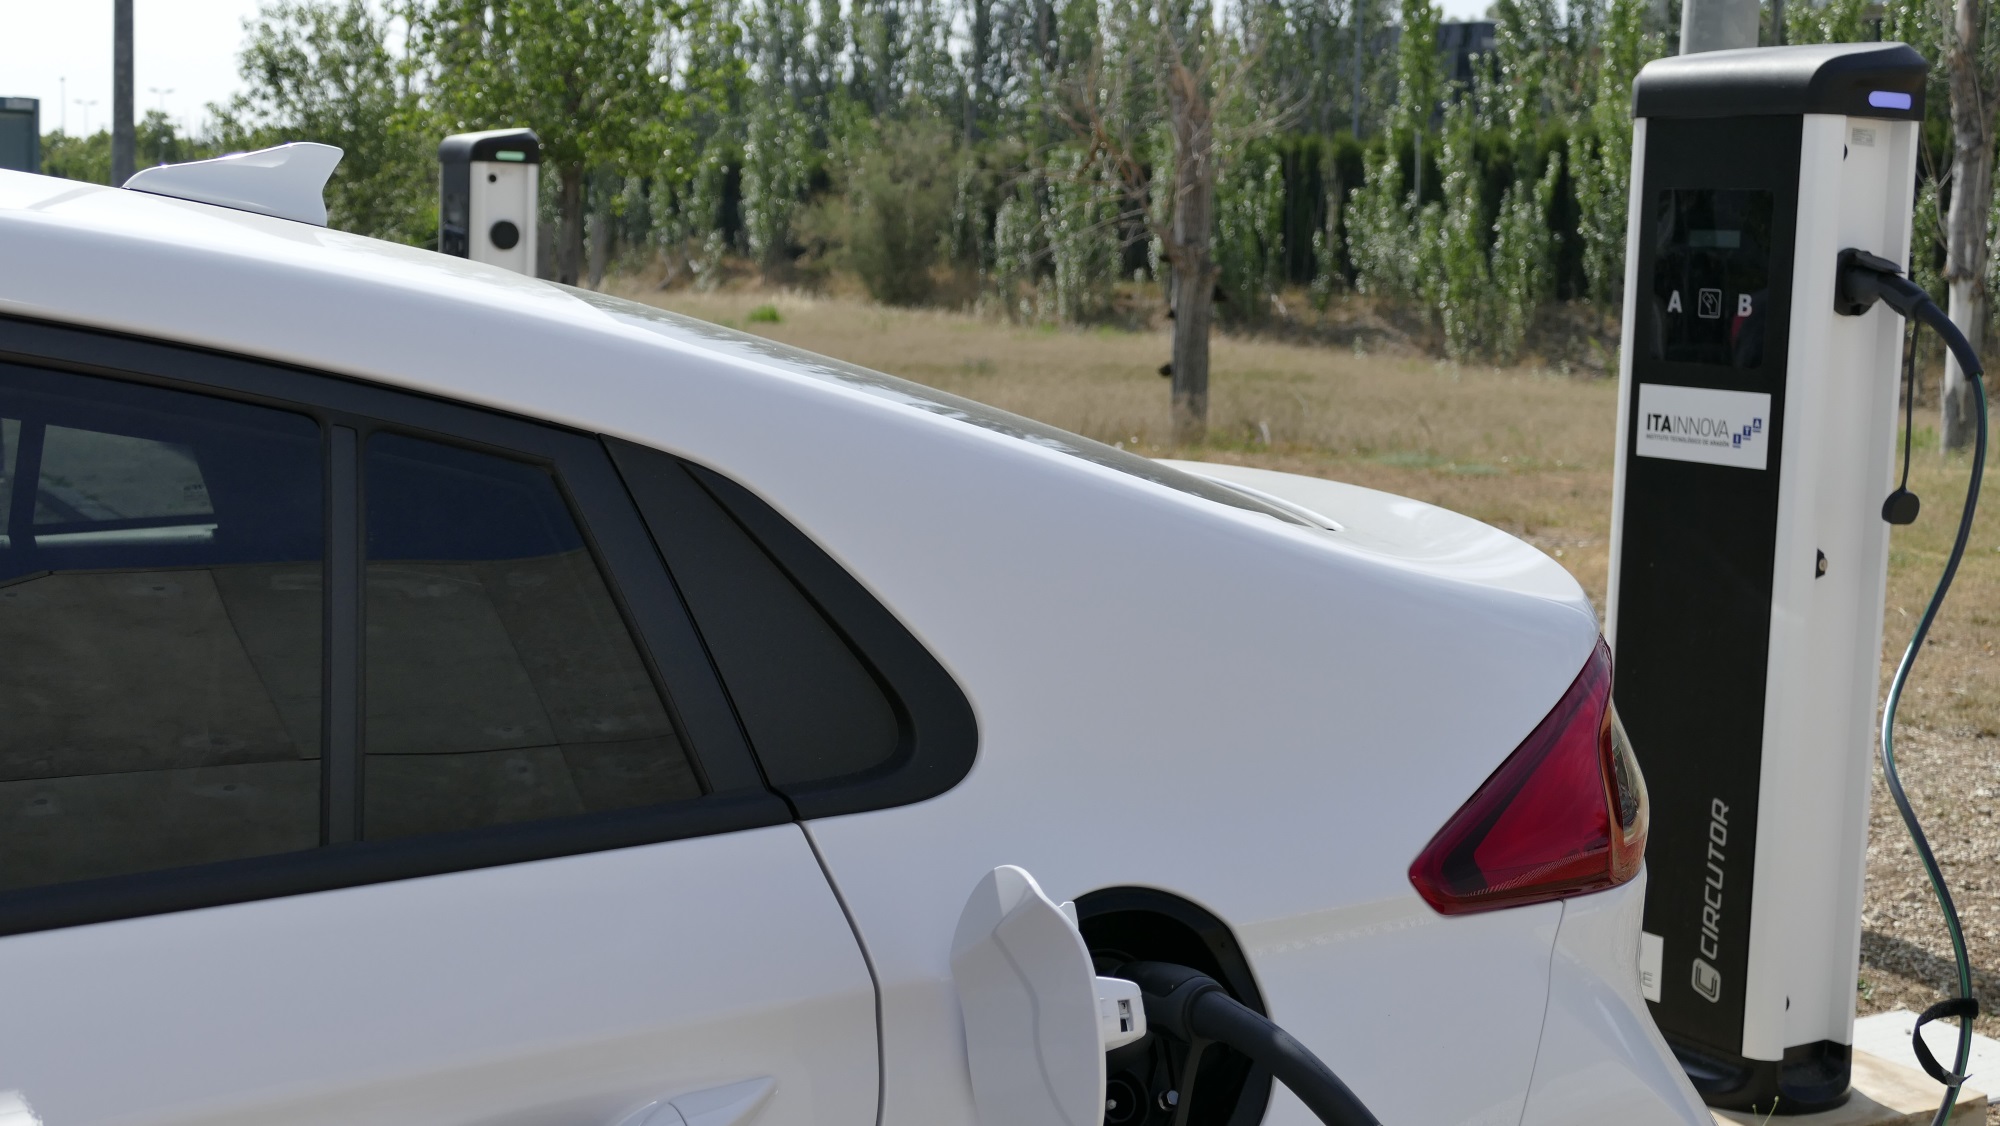 ITAINNOVA circulará en “vehículos limpios” tras su apuesta por el coche eléctrico